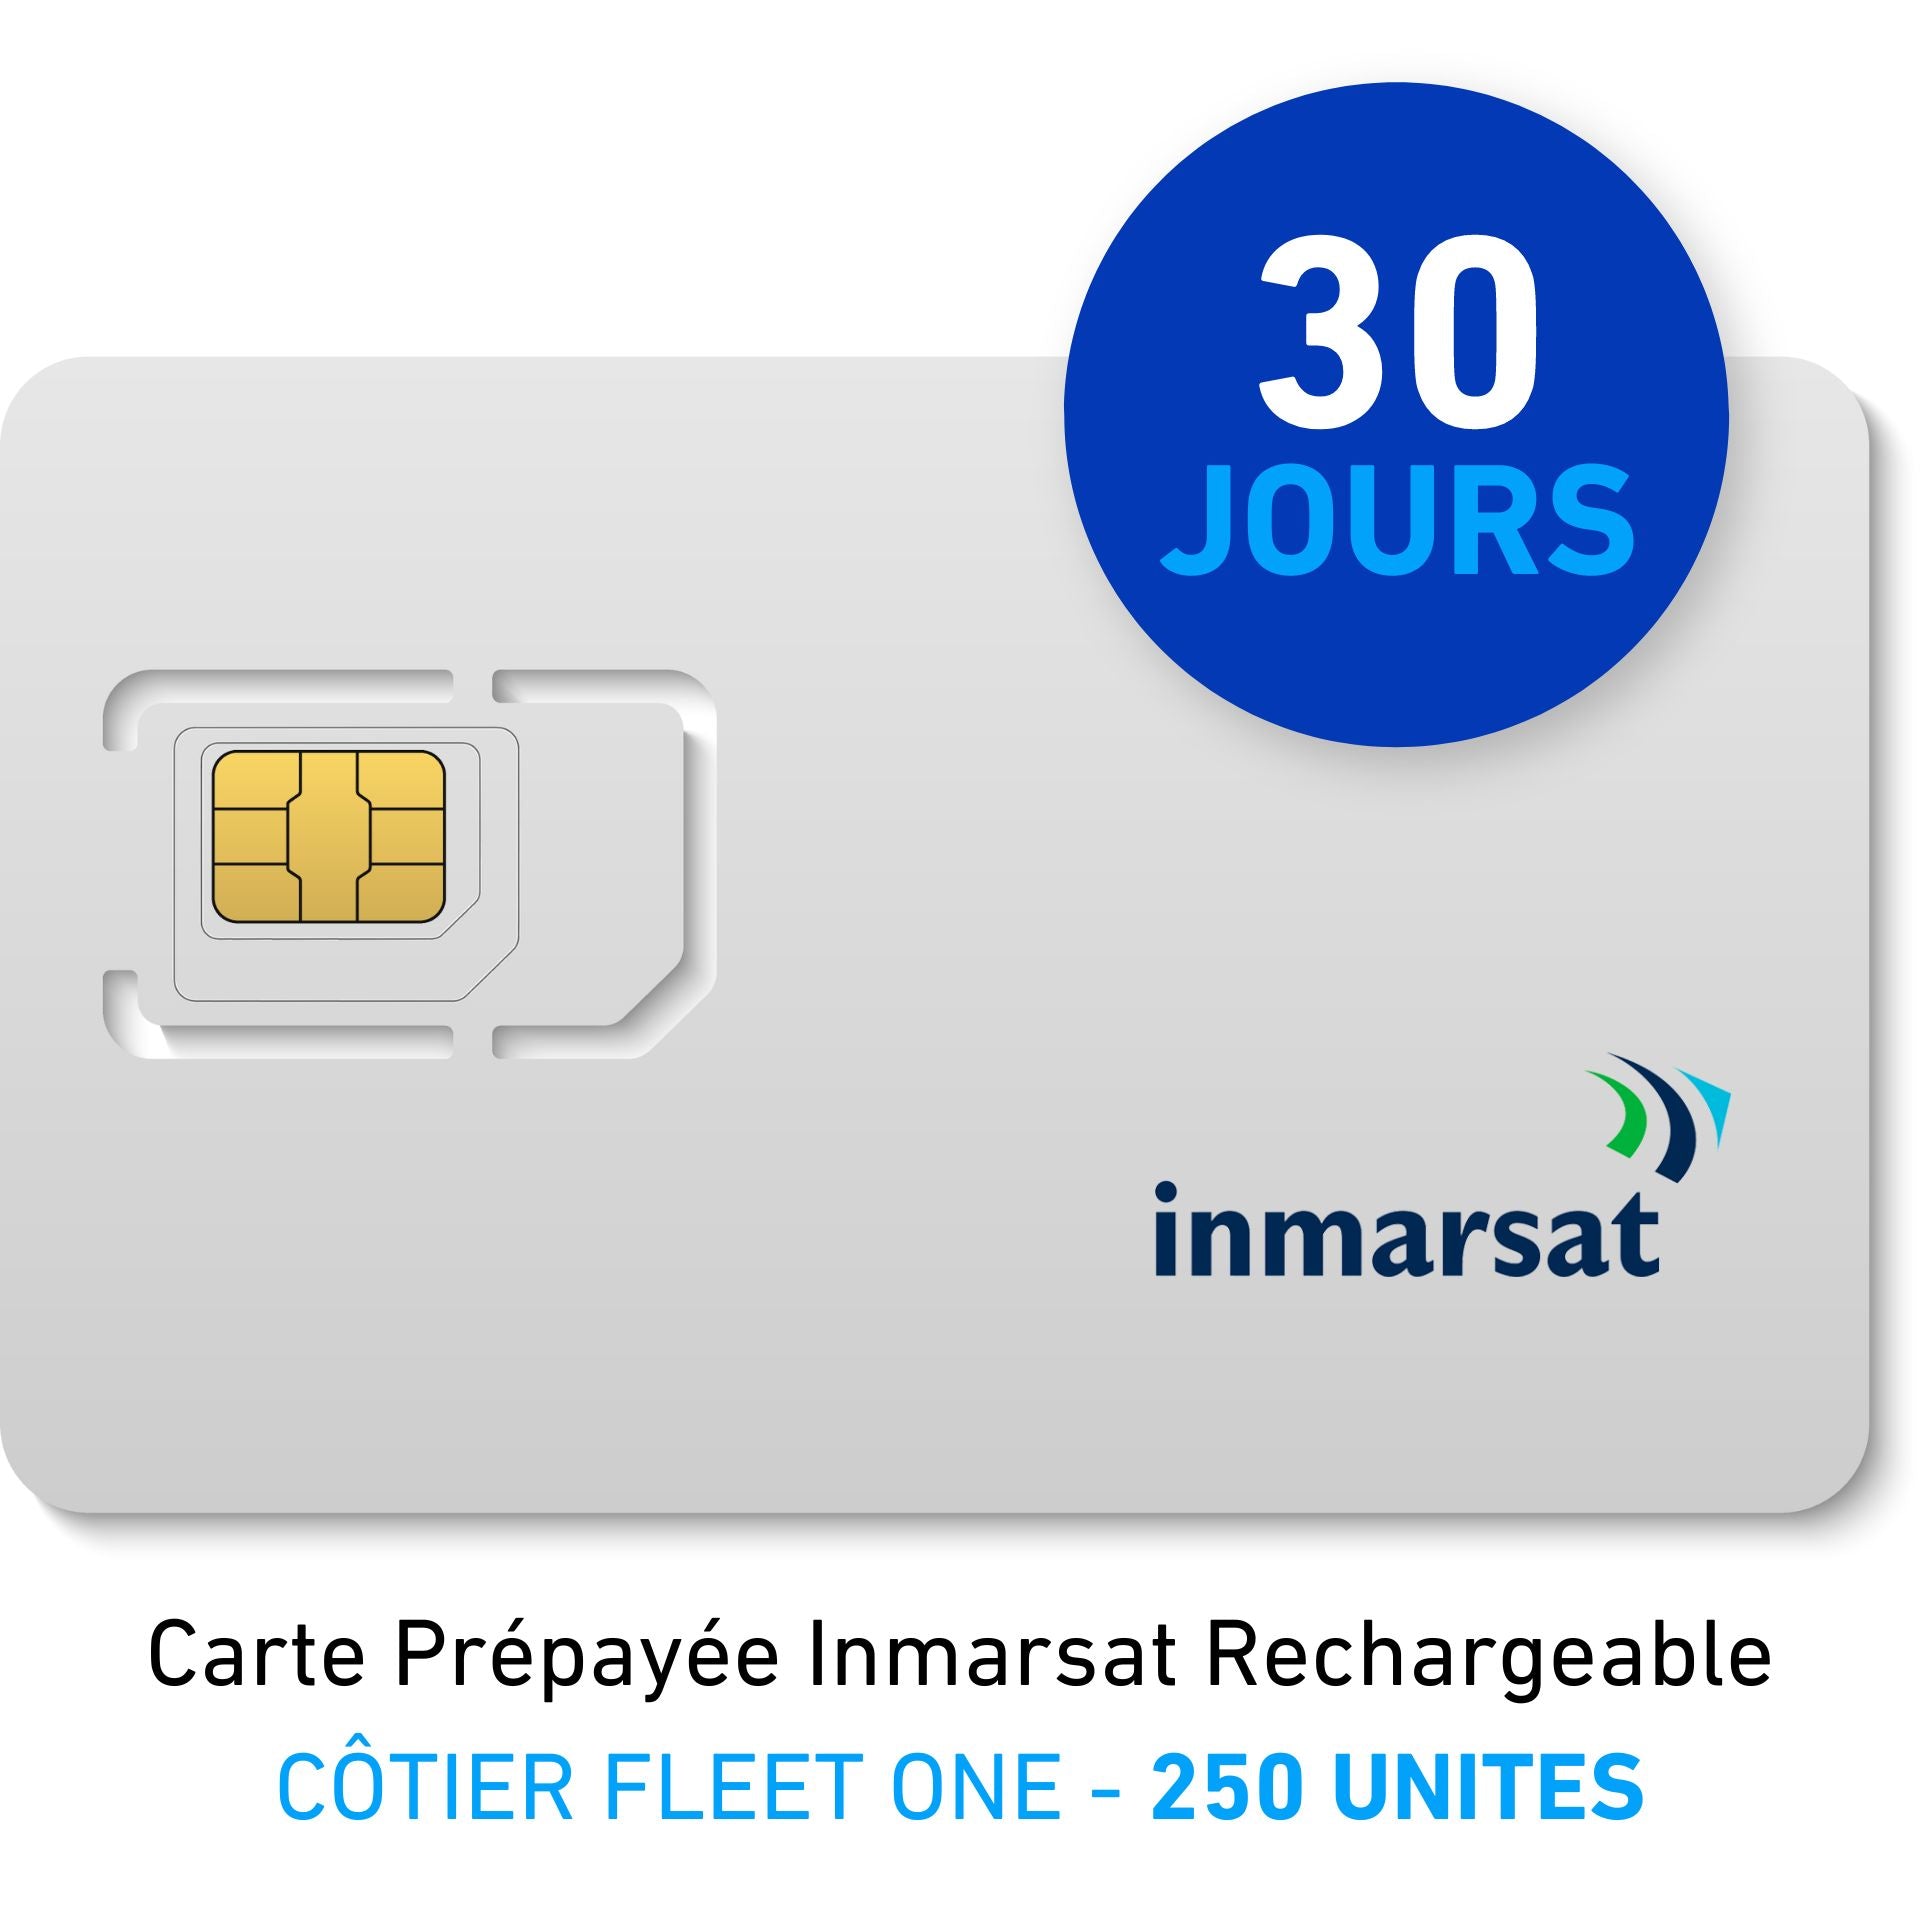 INMARSAT Prepaid-Karte Aufladbar CÔTIER FLEET ONE - 250 UNITES - 30 JOURS